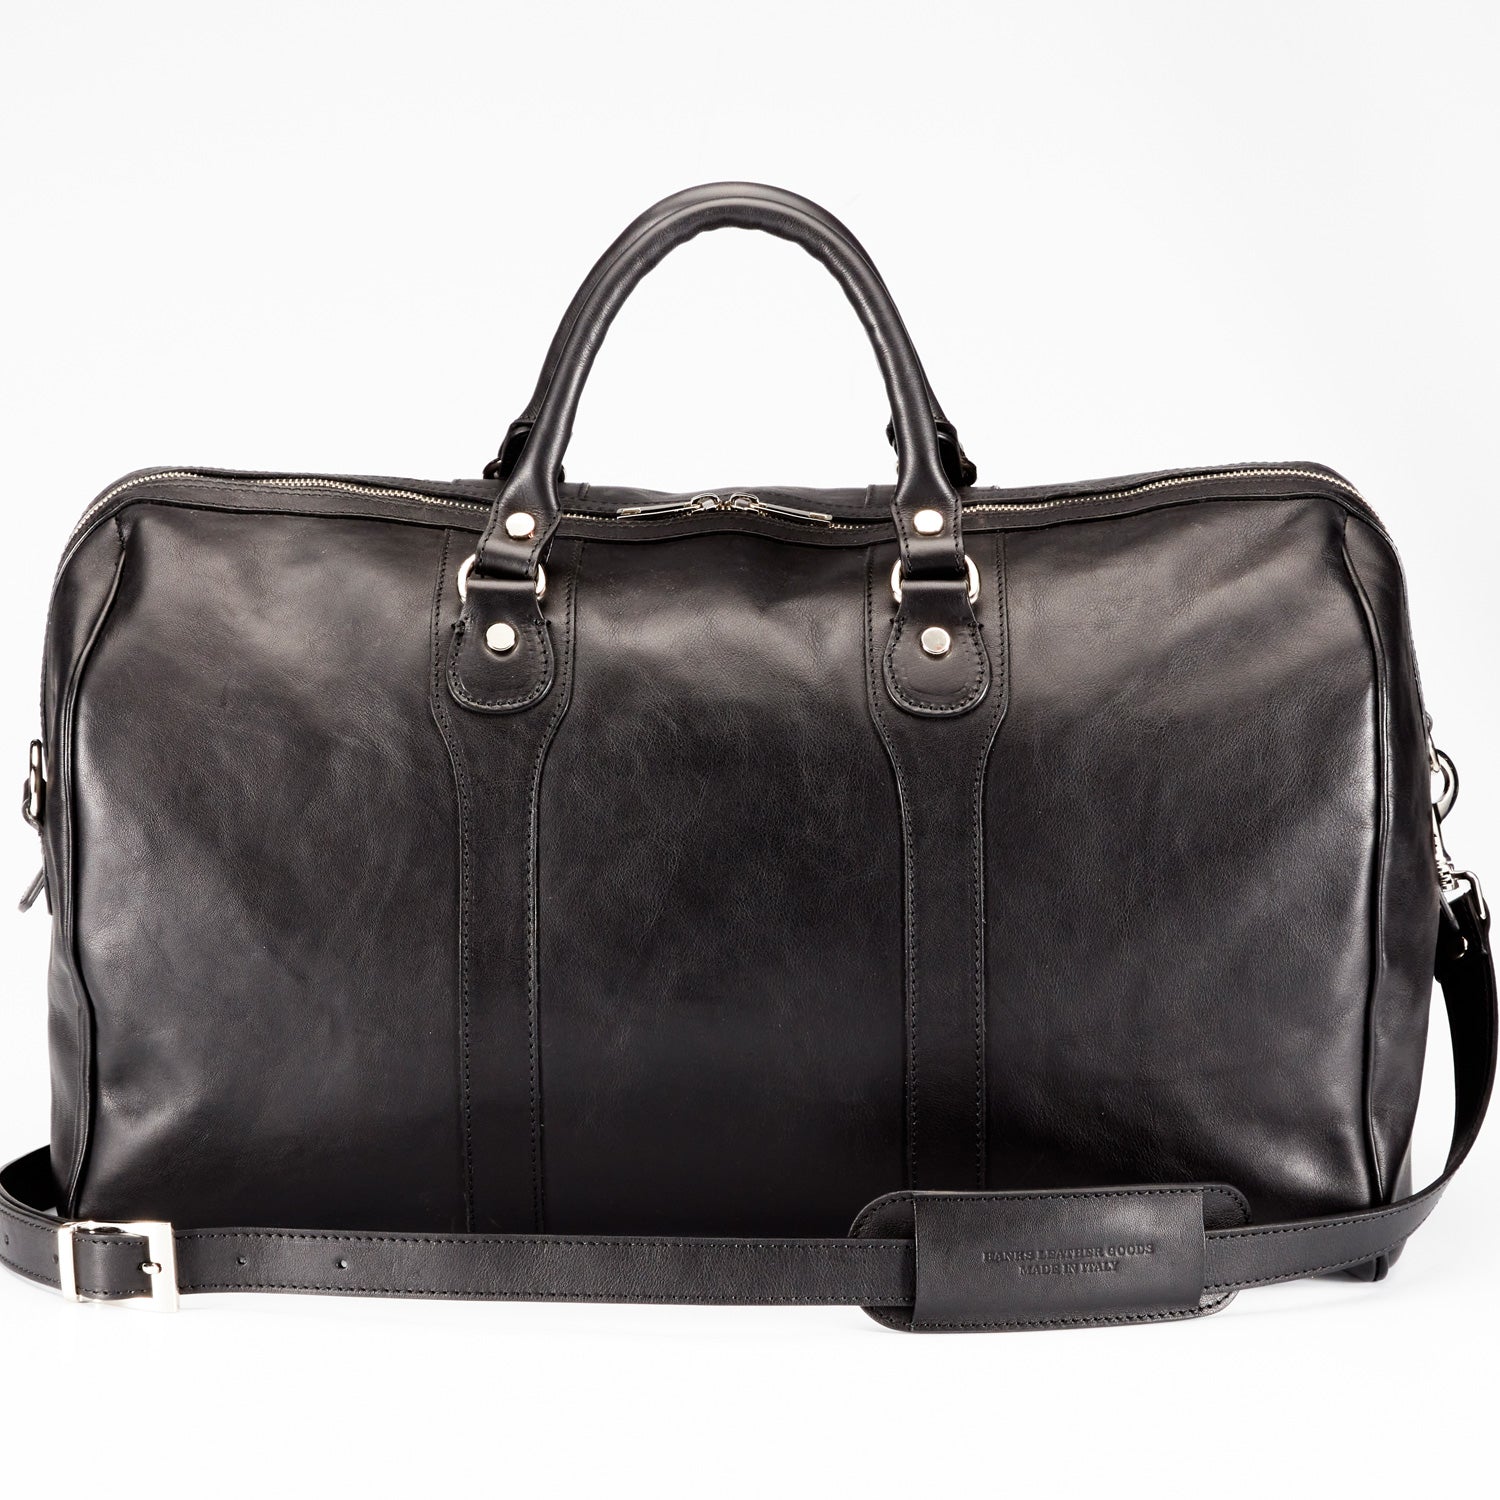 Extra large Leather Travel Bag Duffle Gym Men Vintage Luggage Overnight  Weekend | eBay